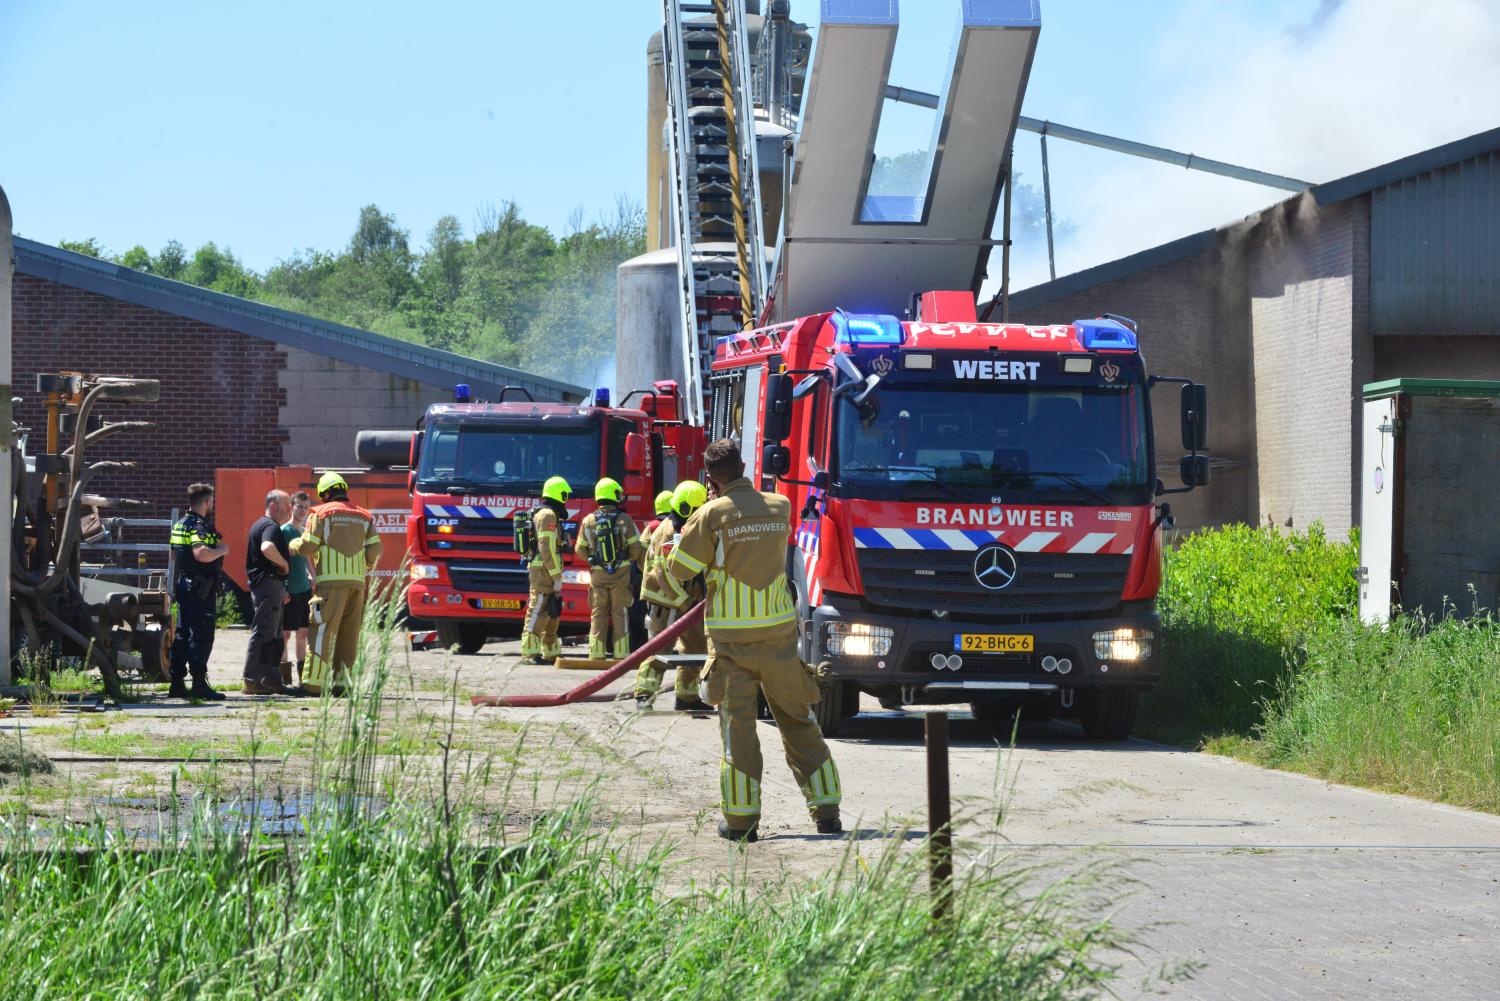 Stalbrand in Nederweert. Brandweermensen onder andere van Brandweer Weert blussen de brand. 